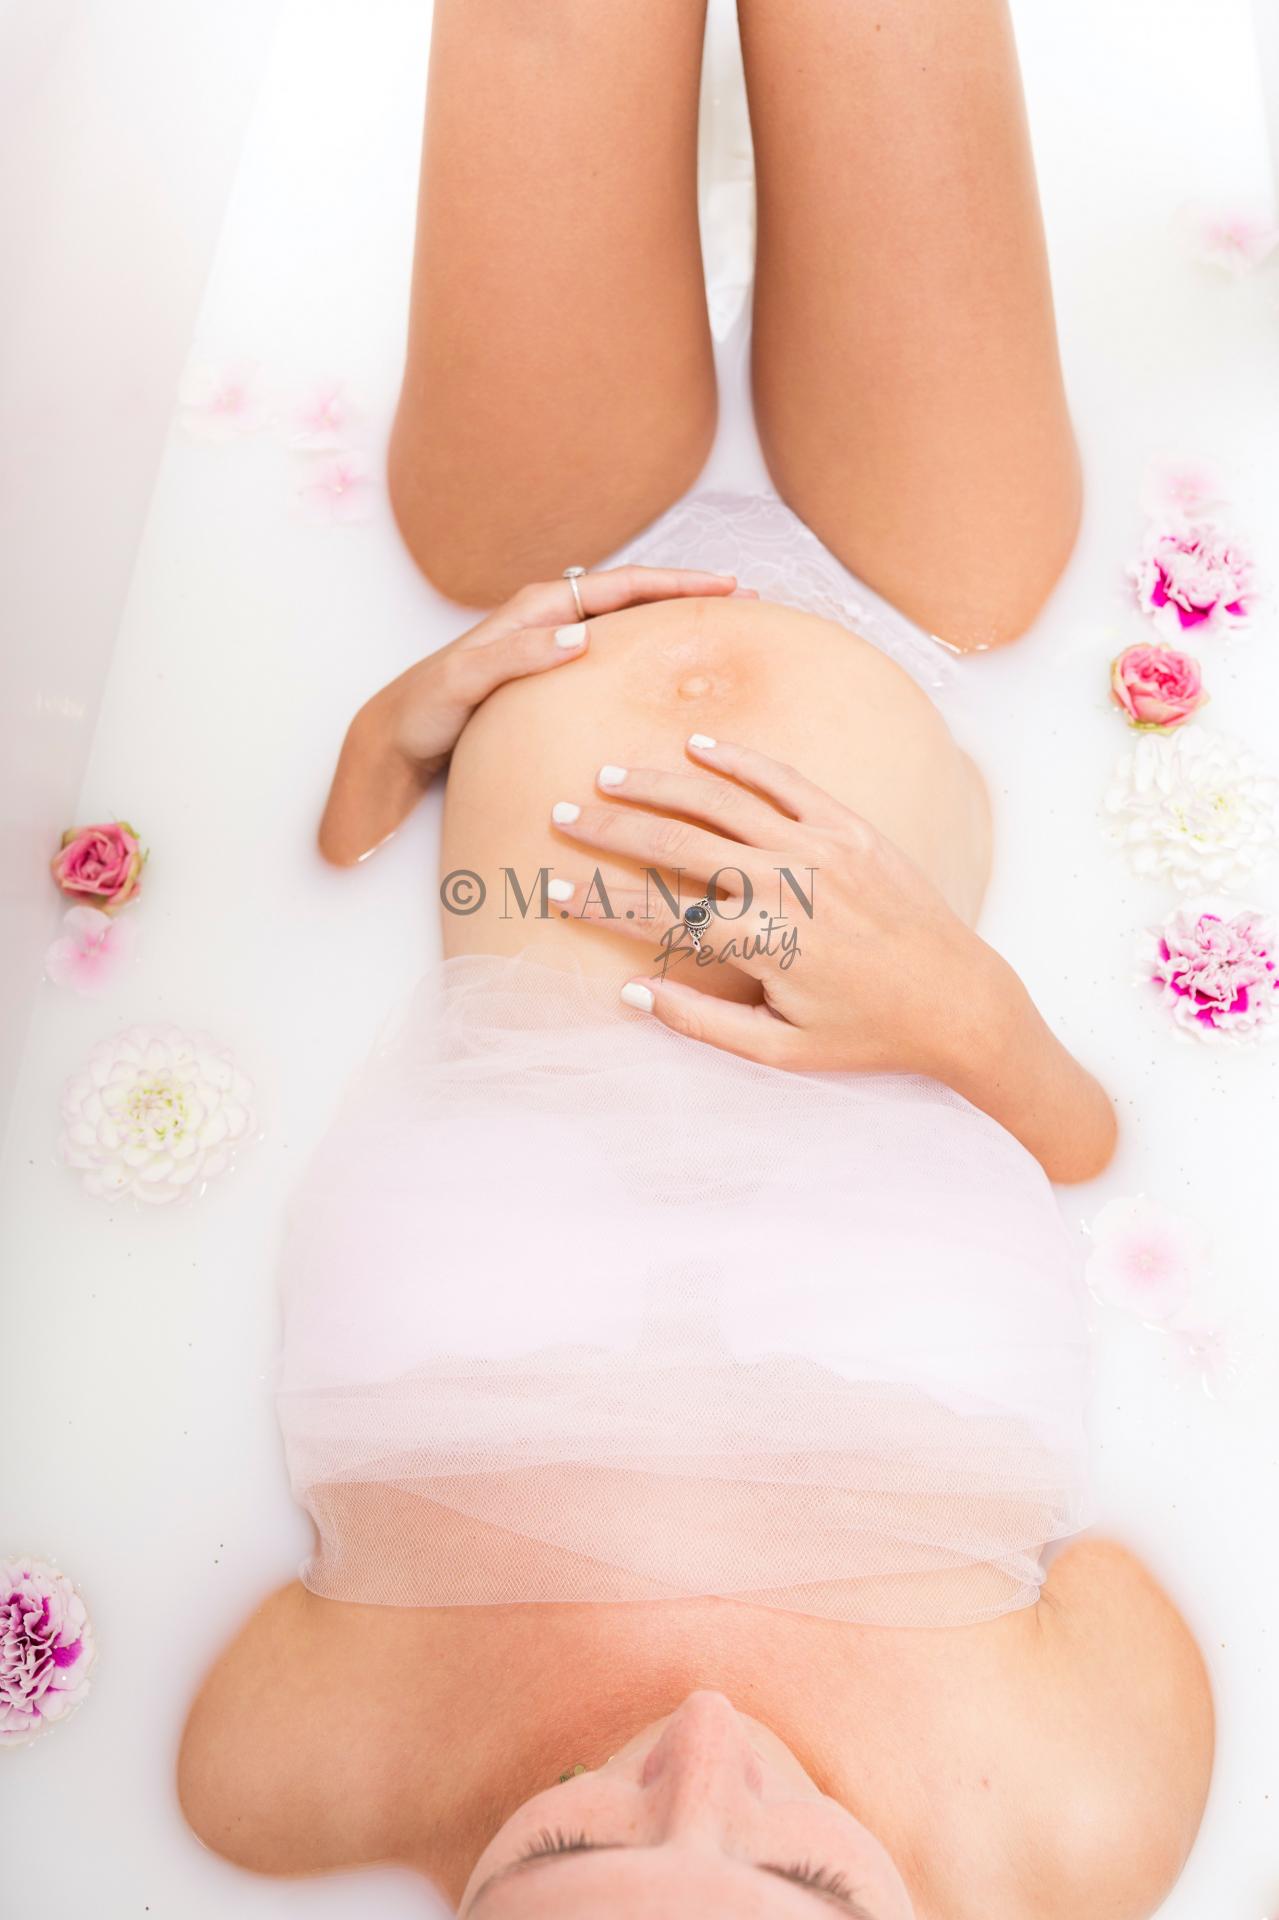 Site 20200922 mb realiste photographe franck barrieres modele laureen delbauche femme enceinte d en haut credit